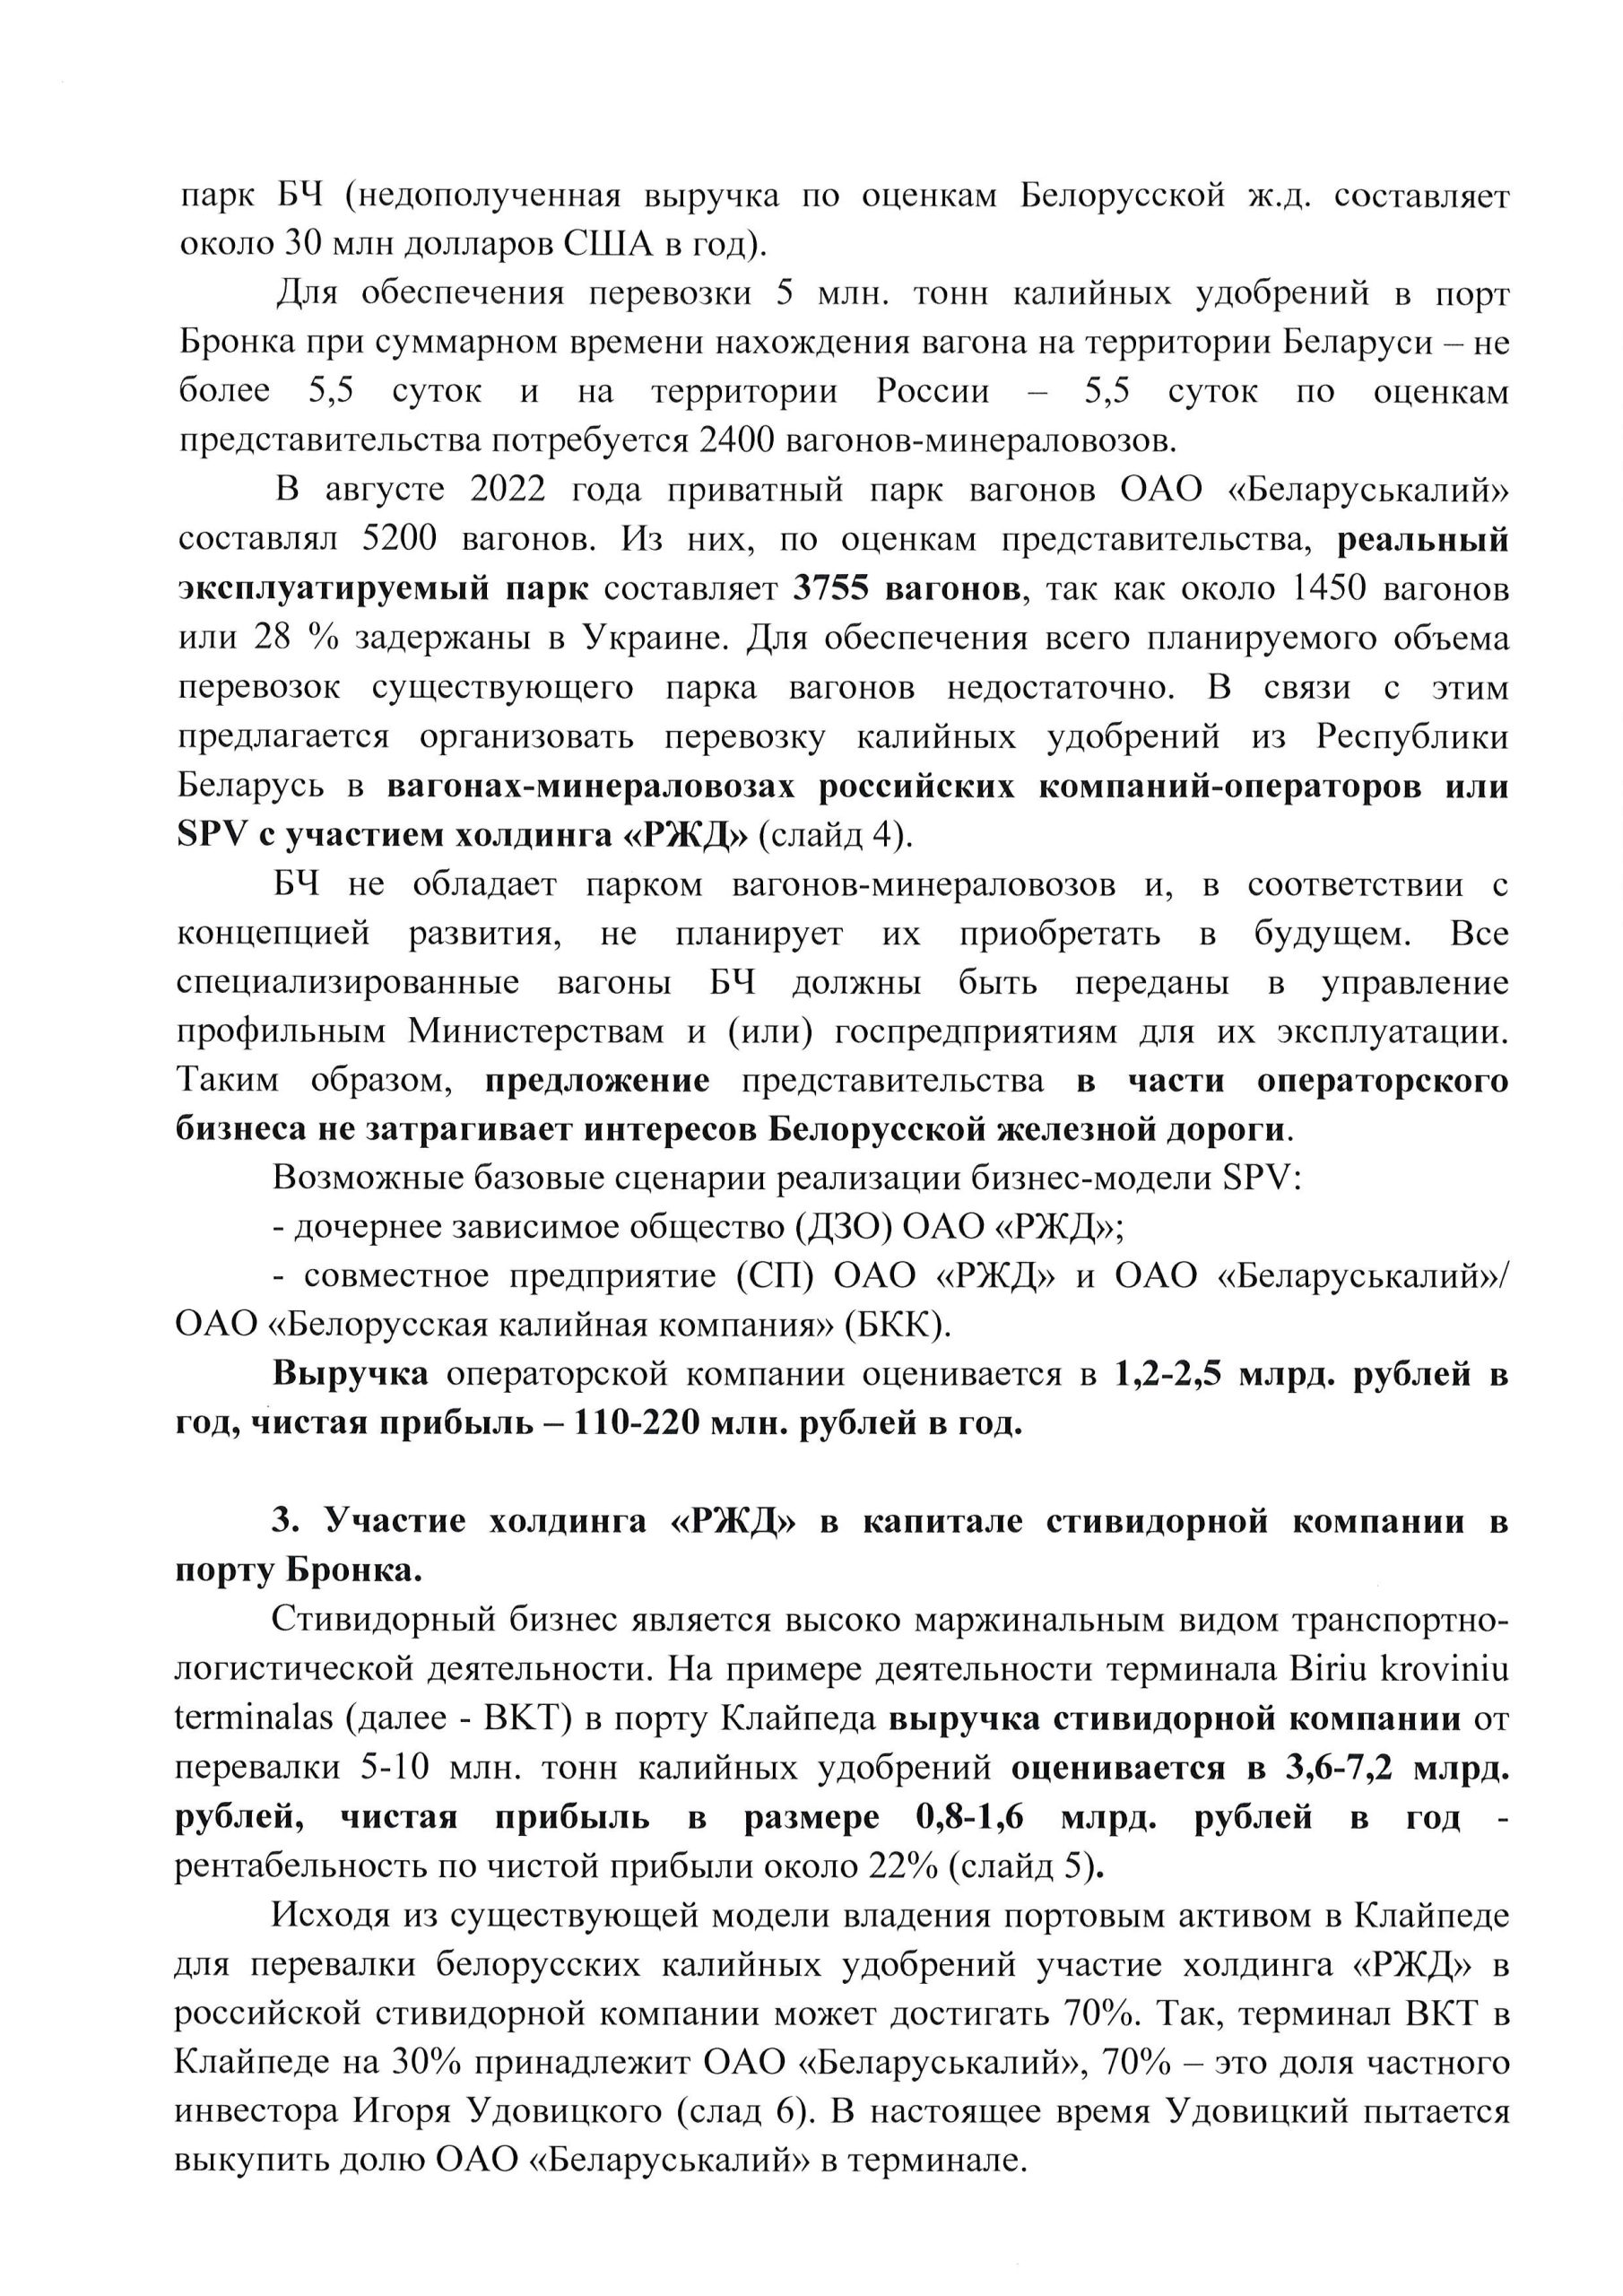 О перевозке беларуских калийных удобрений (Страница 3)